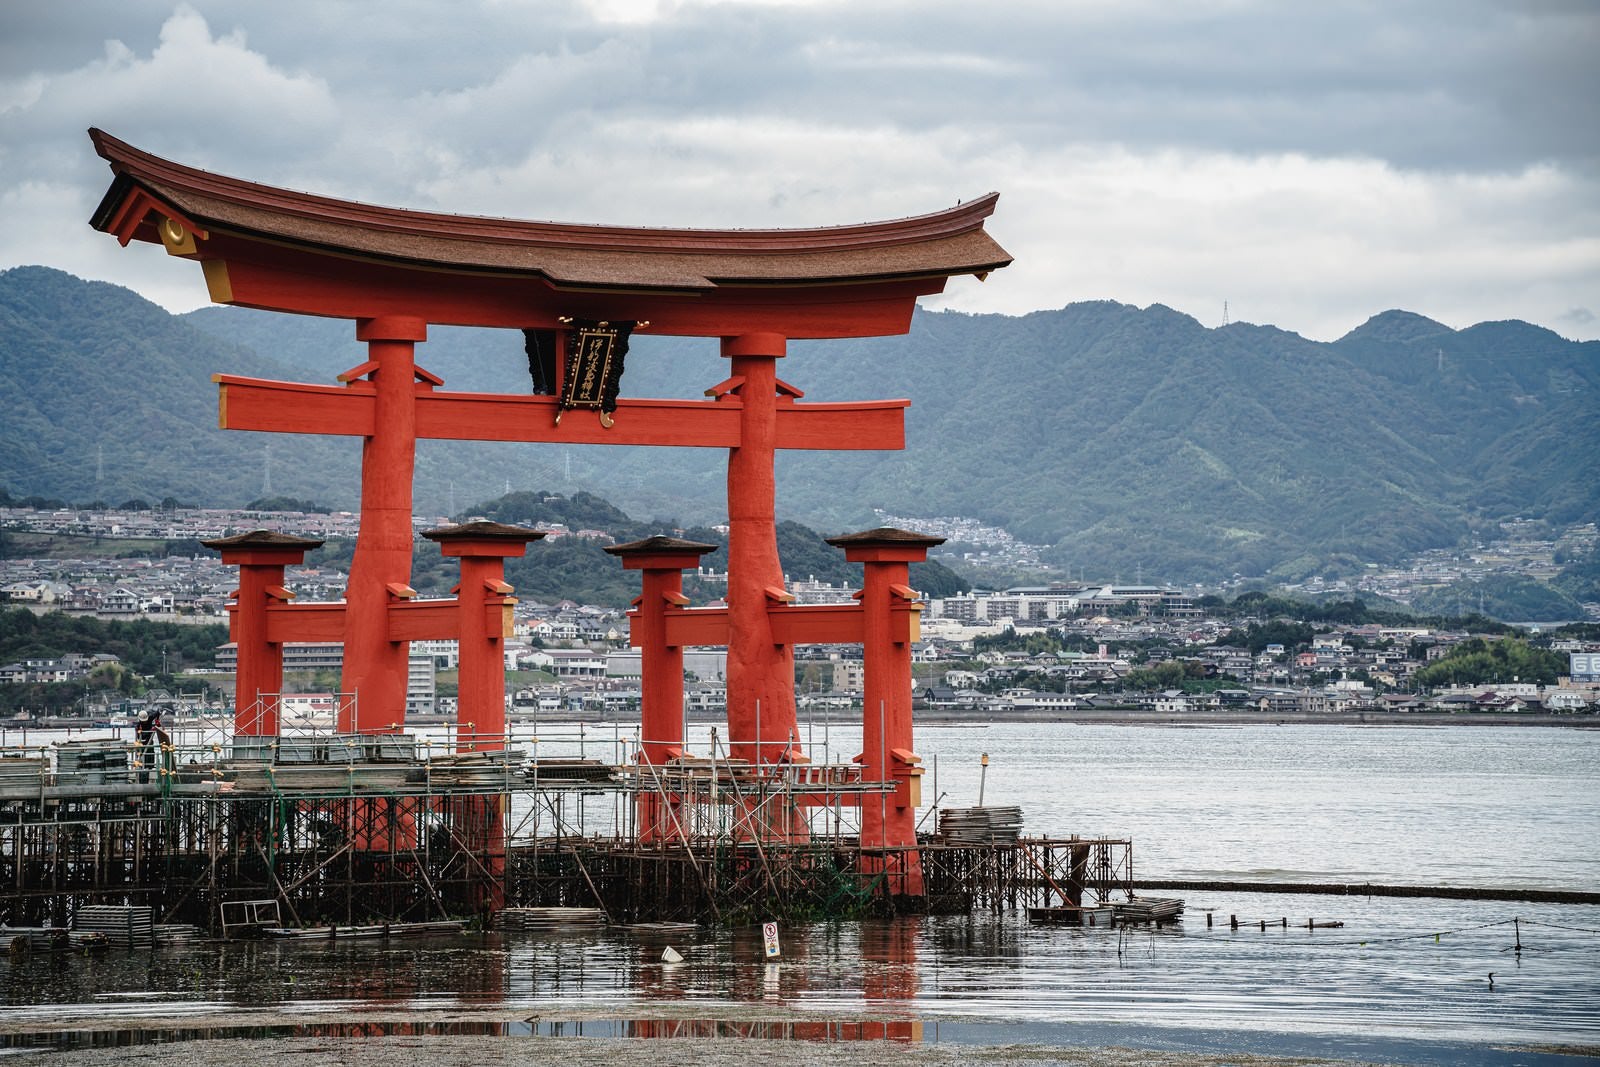 「保全修理中の厳島神社大鳥居」の写真